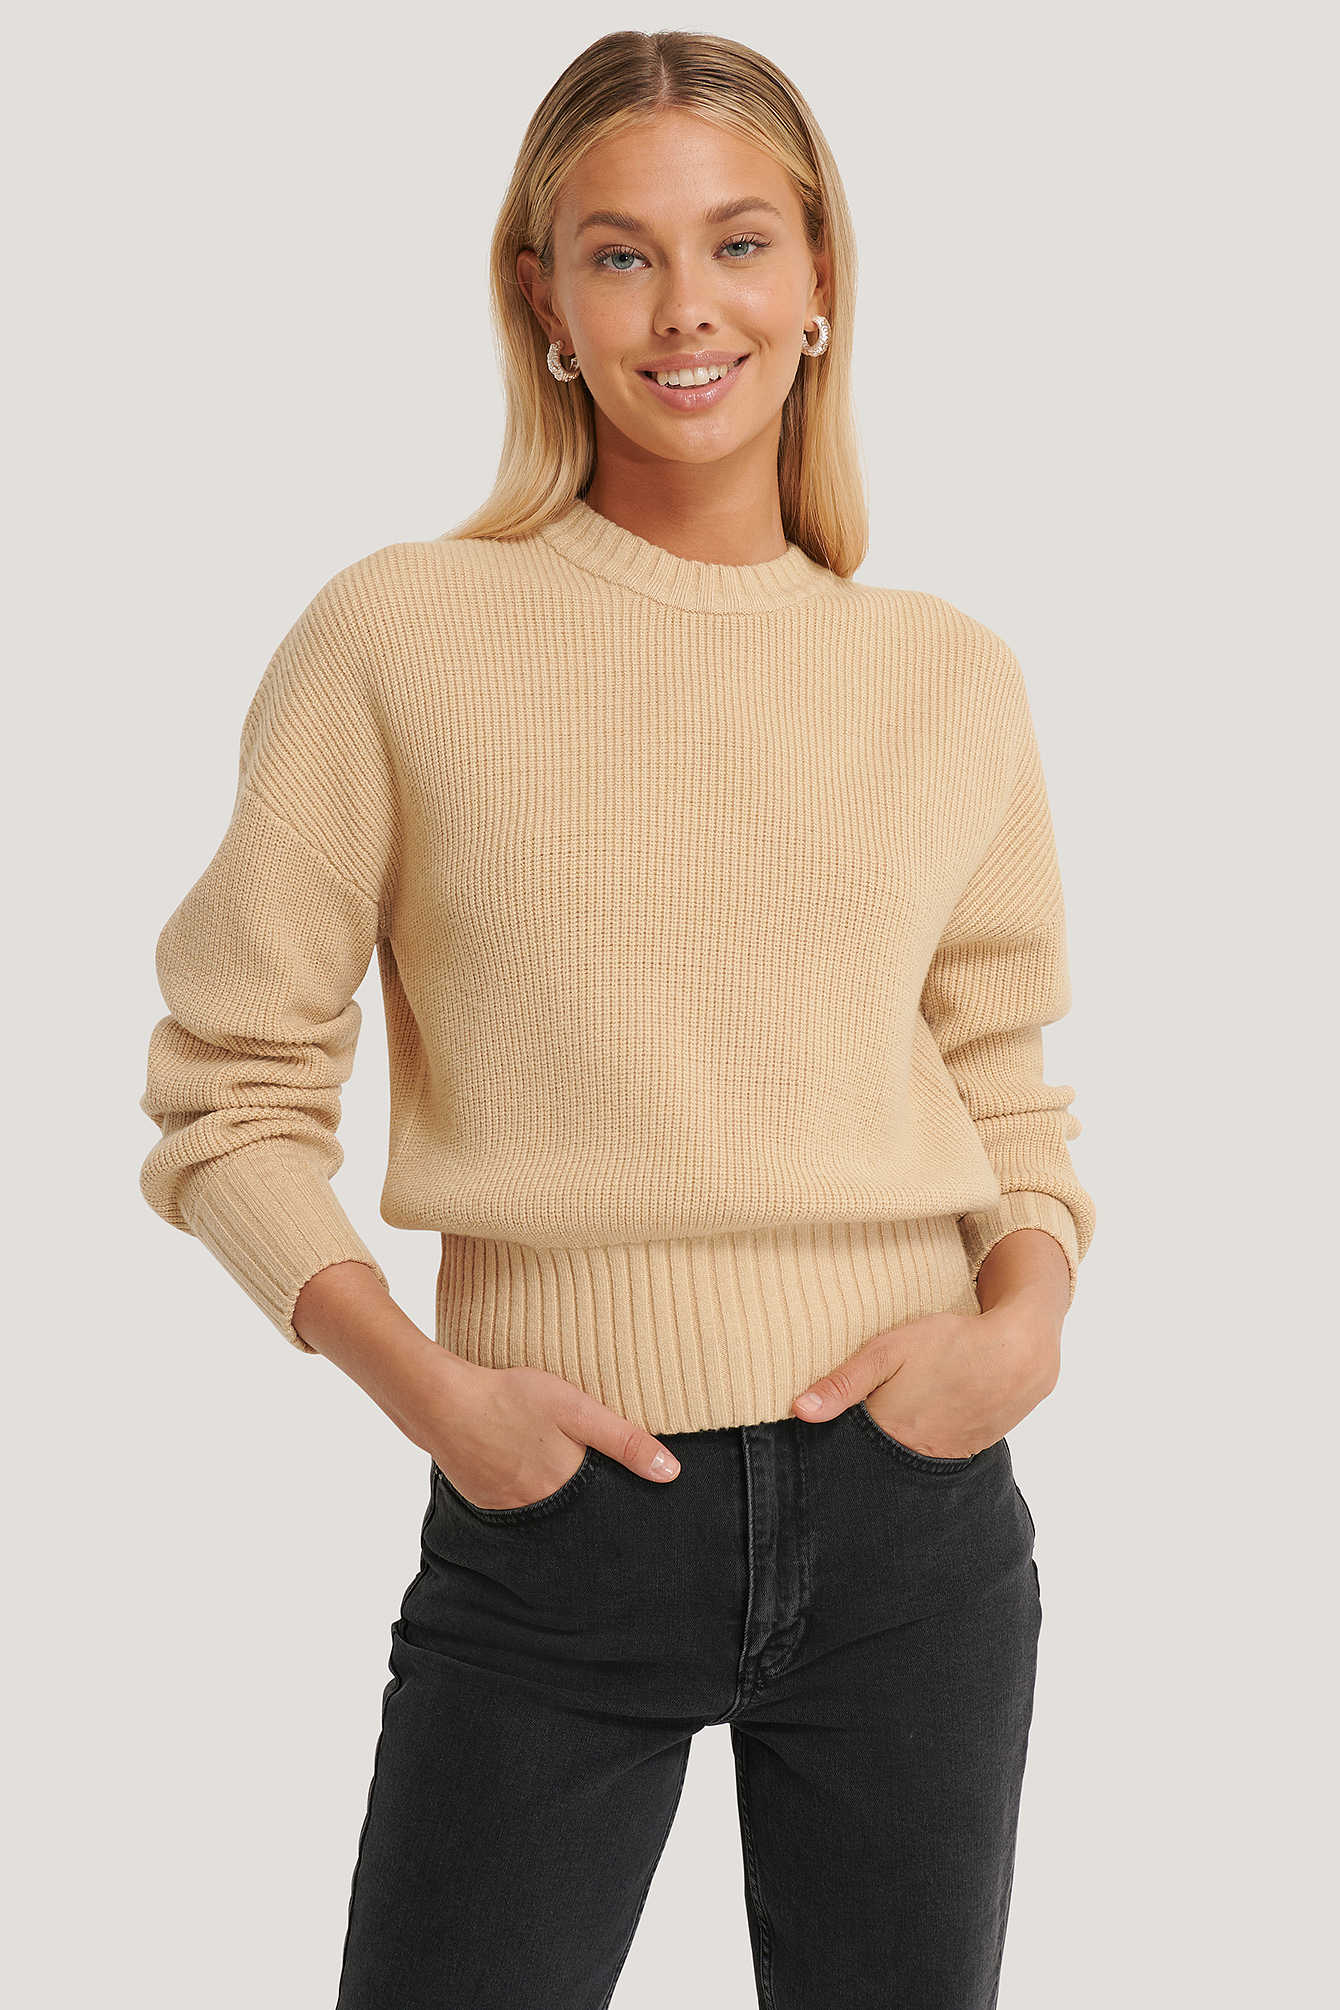 Beige Round Neck Knitted Sweater